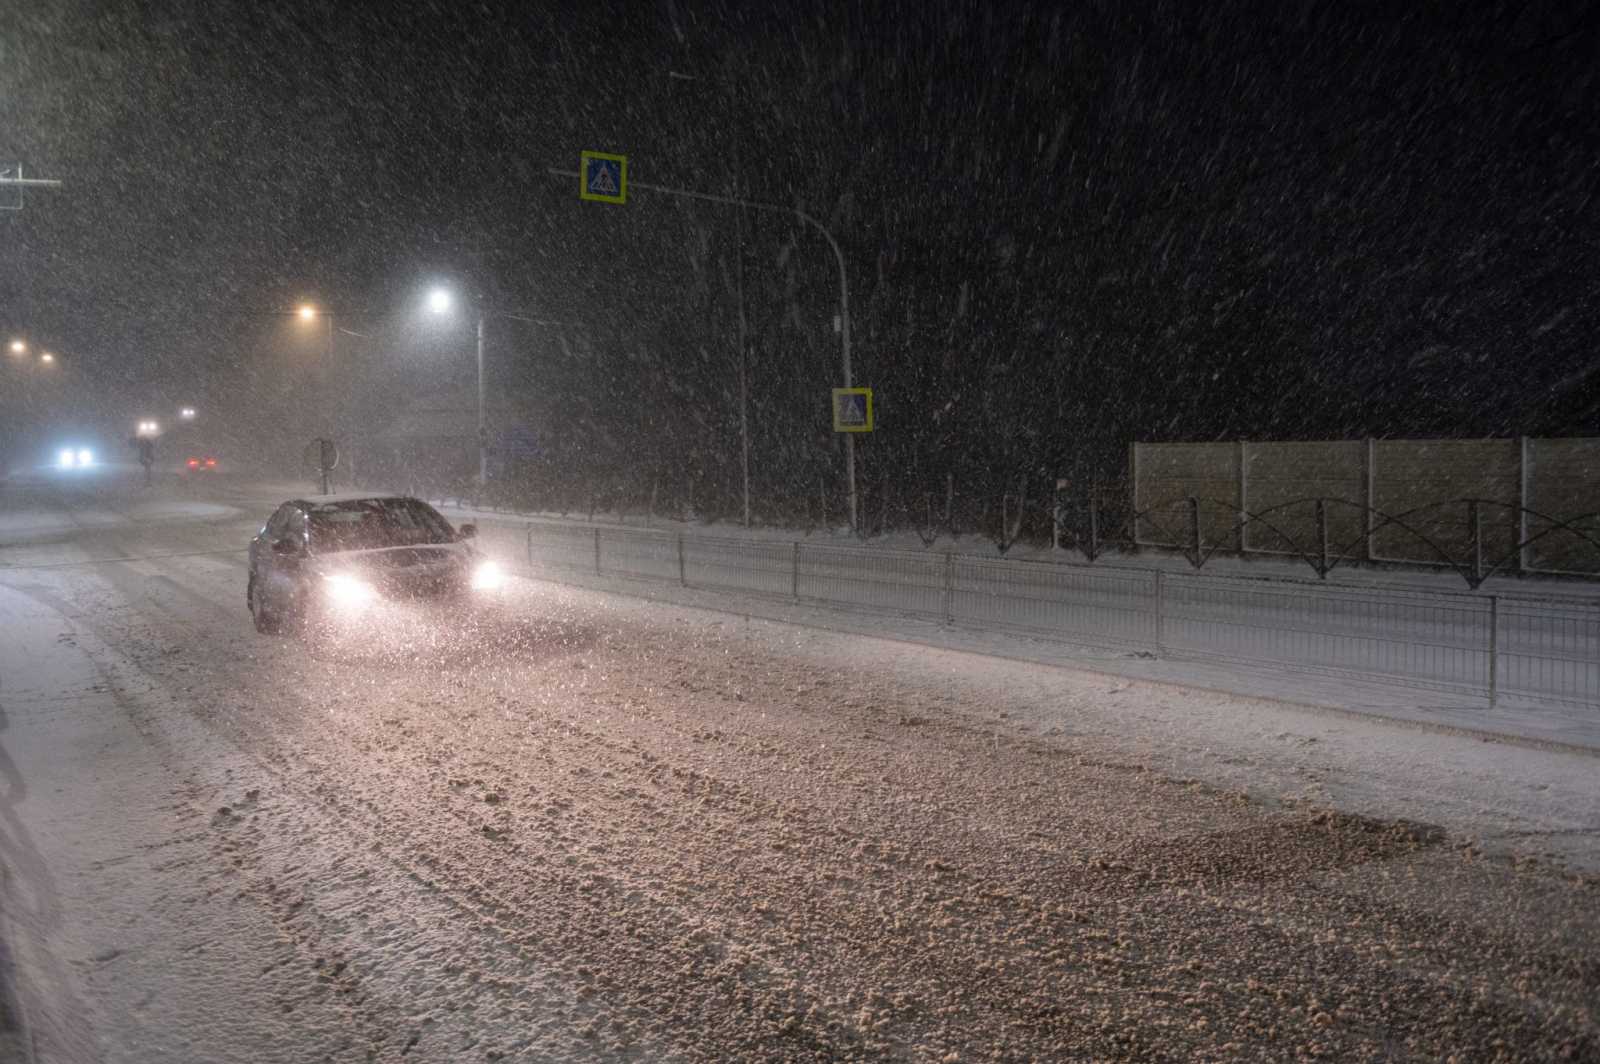 A meglepetés már Torda után, Koppándot Kolozsvár irányába elhagyva érződött, hirtelen elkezdett felgyűlni a hó az úton.